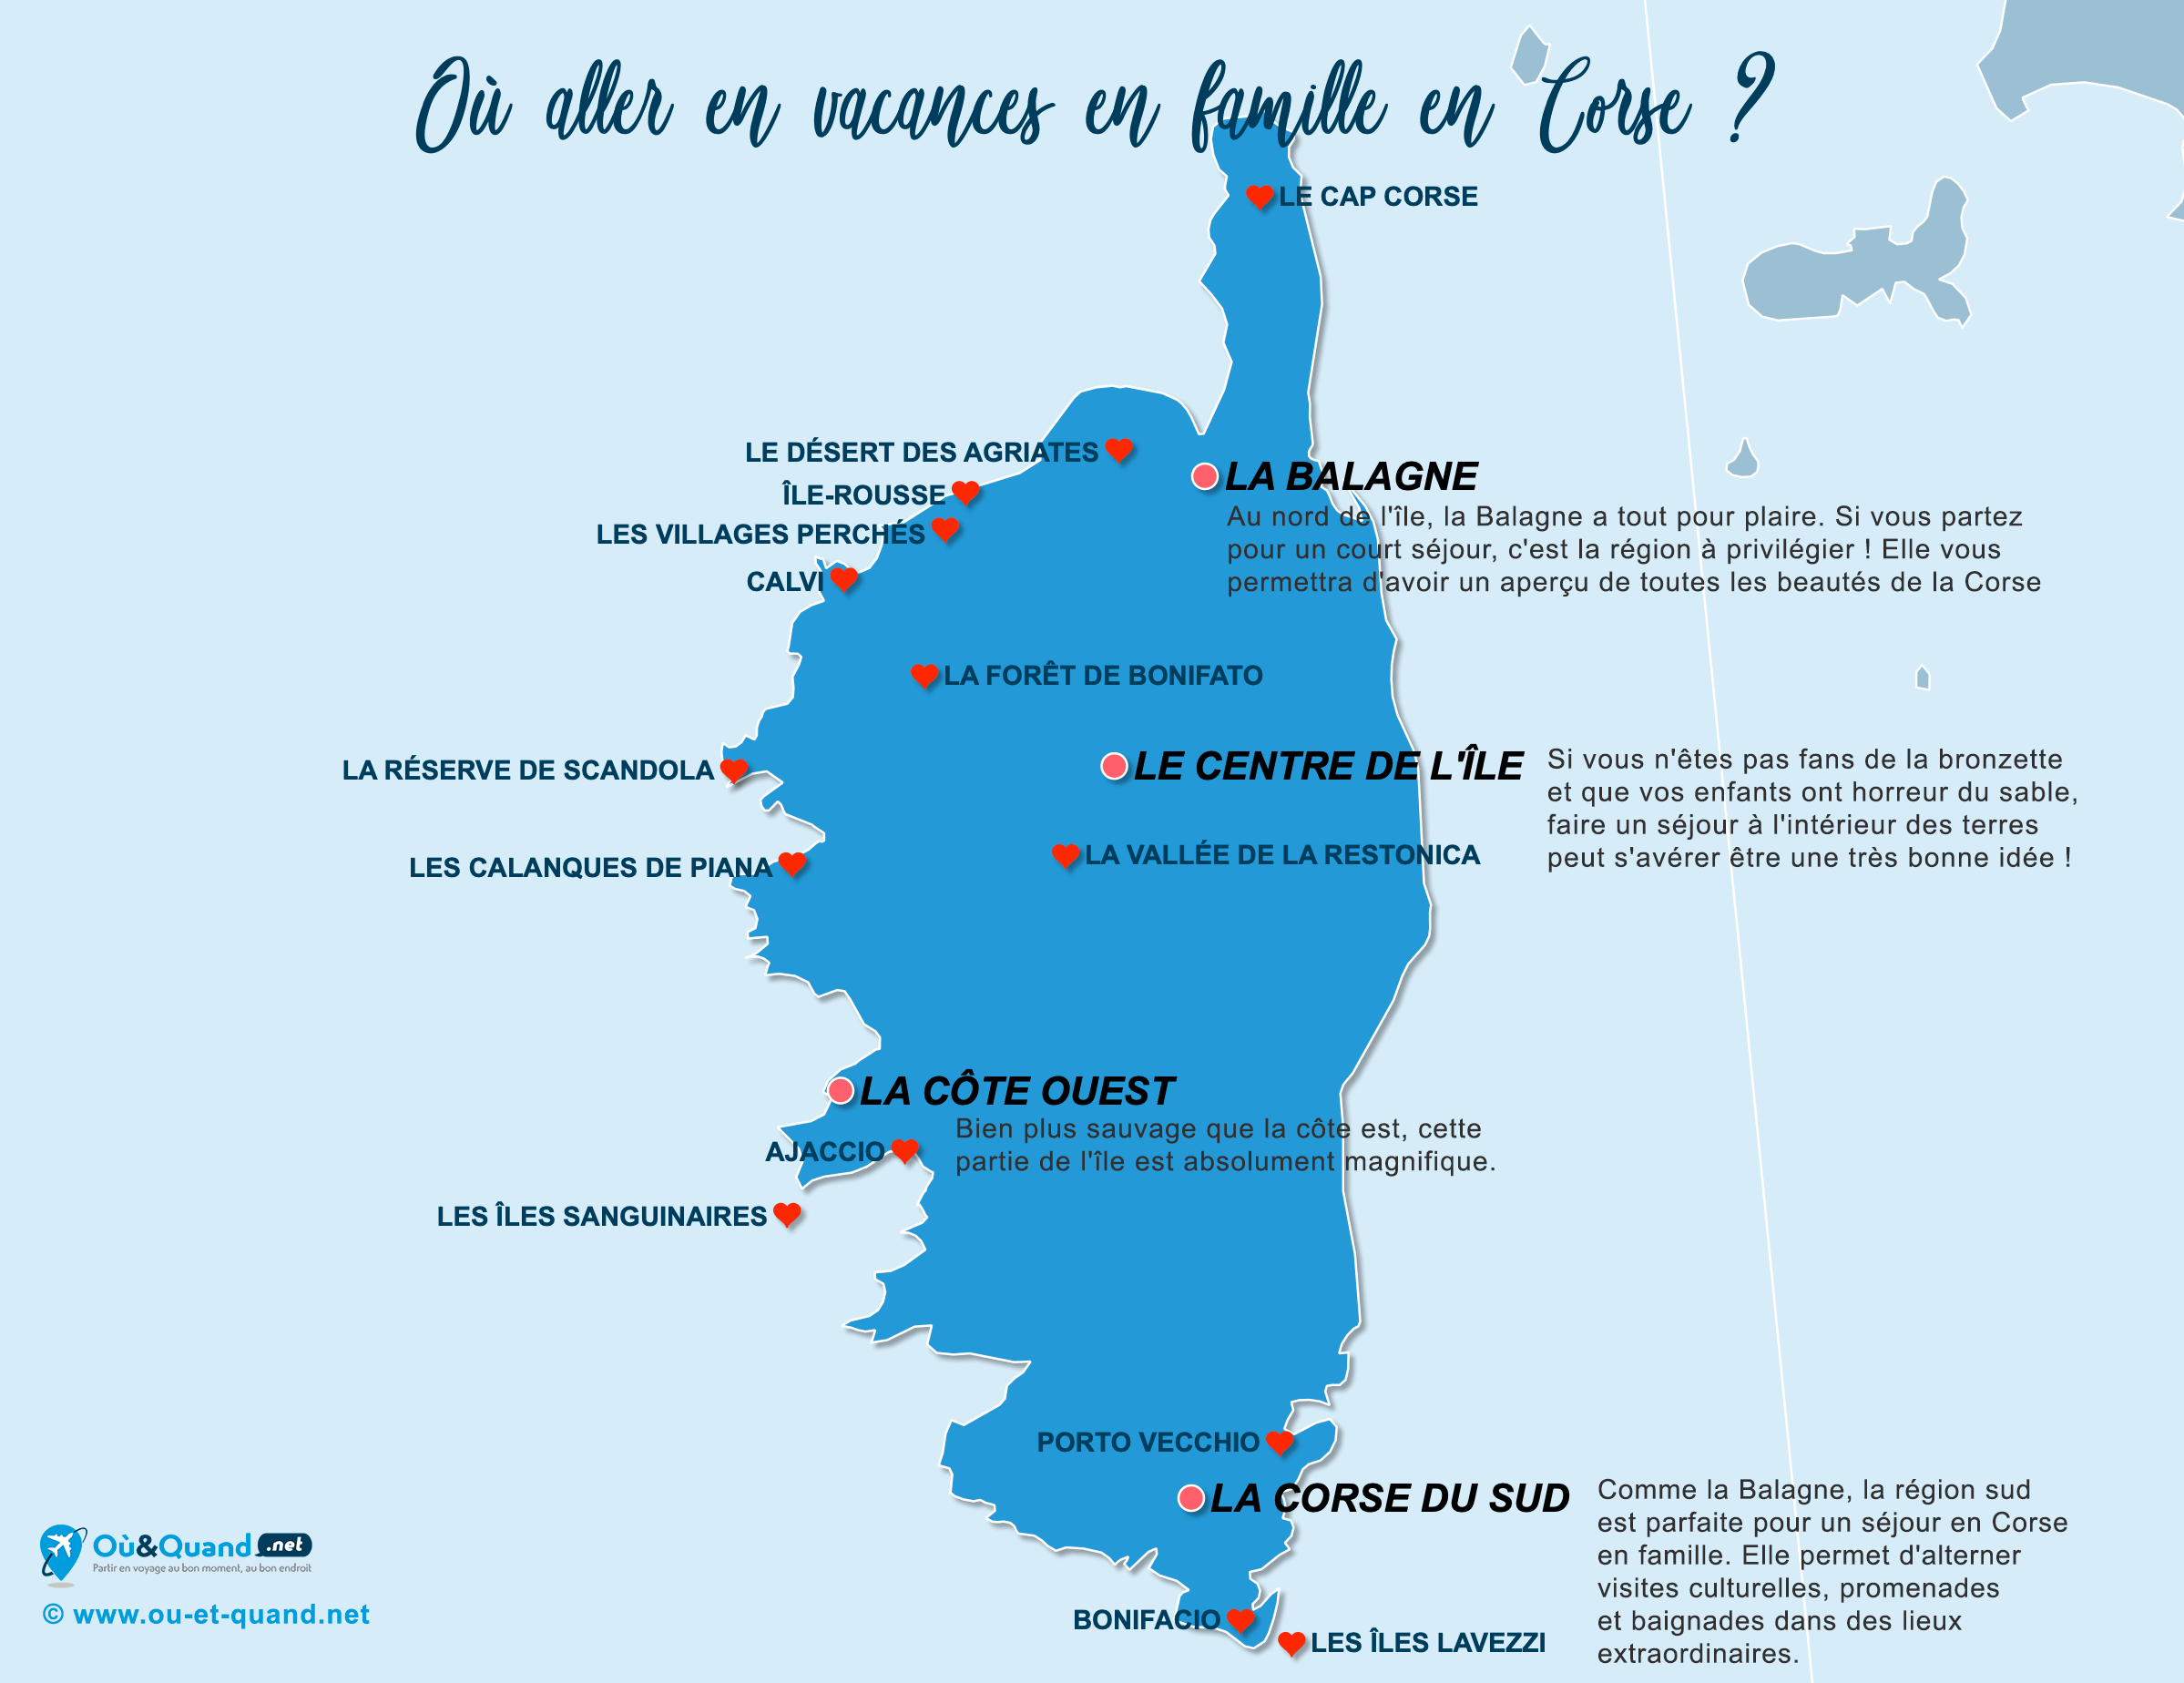 La carte des endroits en Corse où aller en vacances en famille